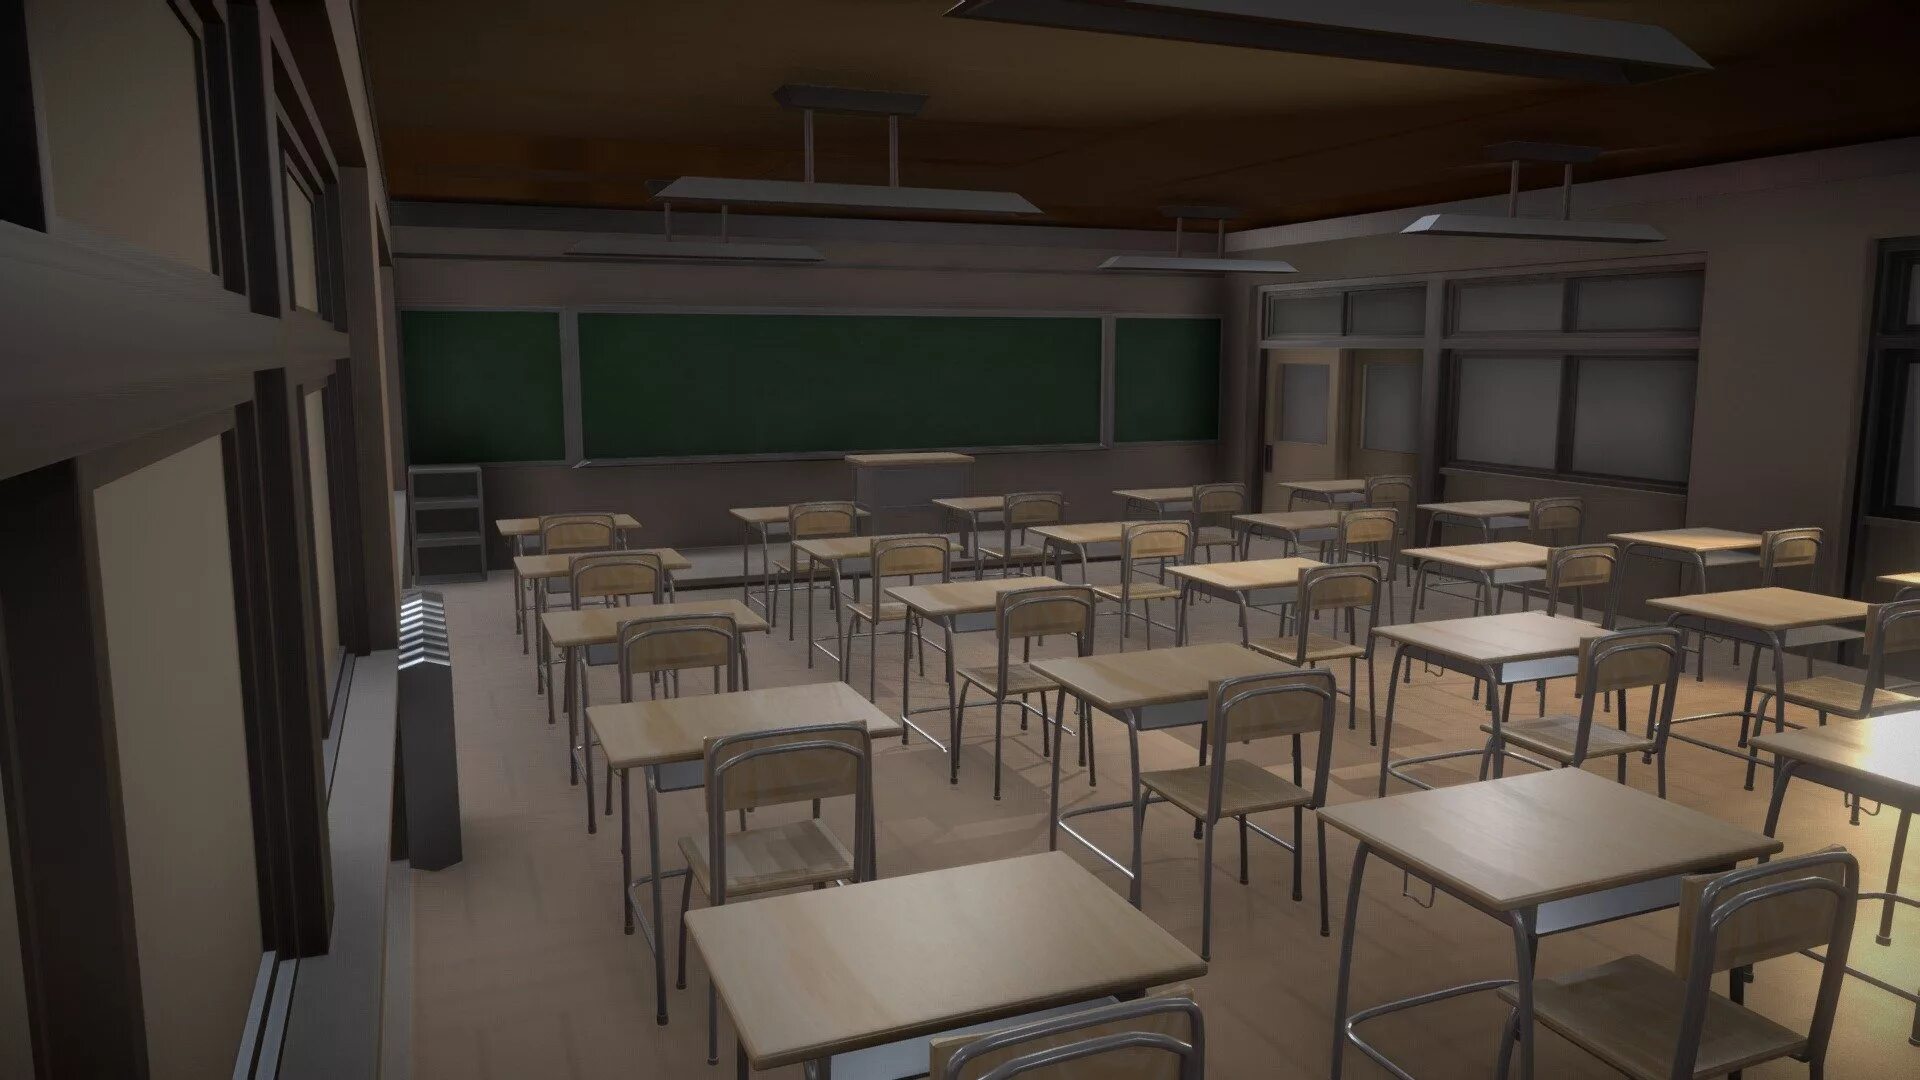 R34 classroom. 3д модель японской школы. 3д класс в школе. Школа 3d.